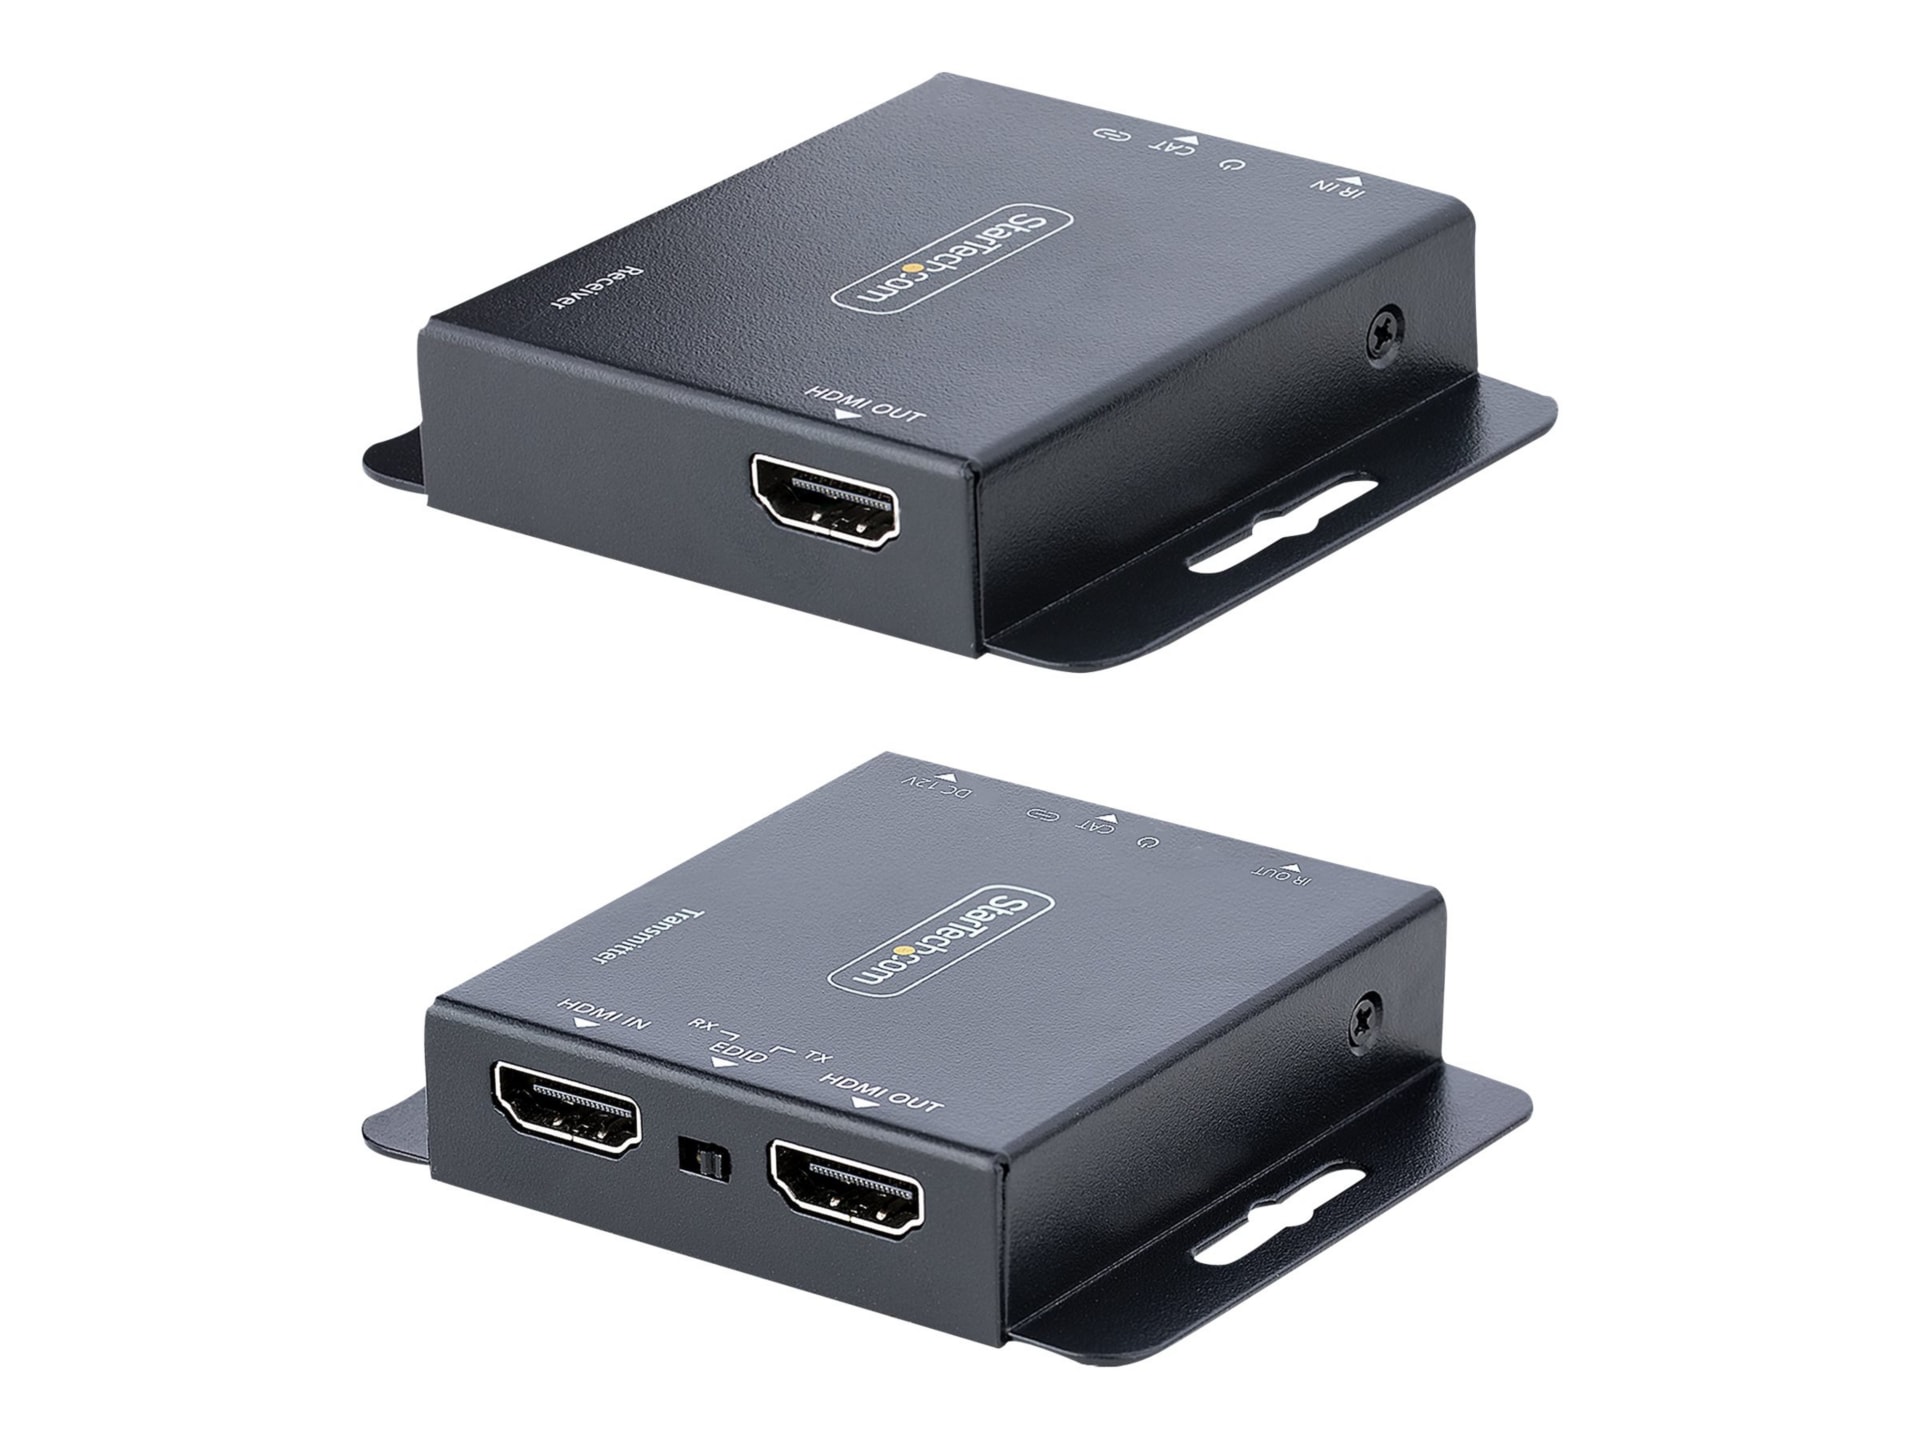 Rallonge HDMI 4K StarTech.com sur câble Ethernet CAT6/CAT5, 4K30, 1080p